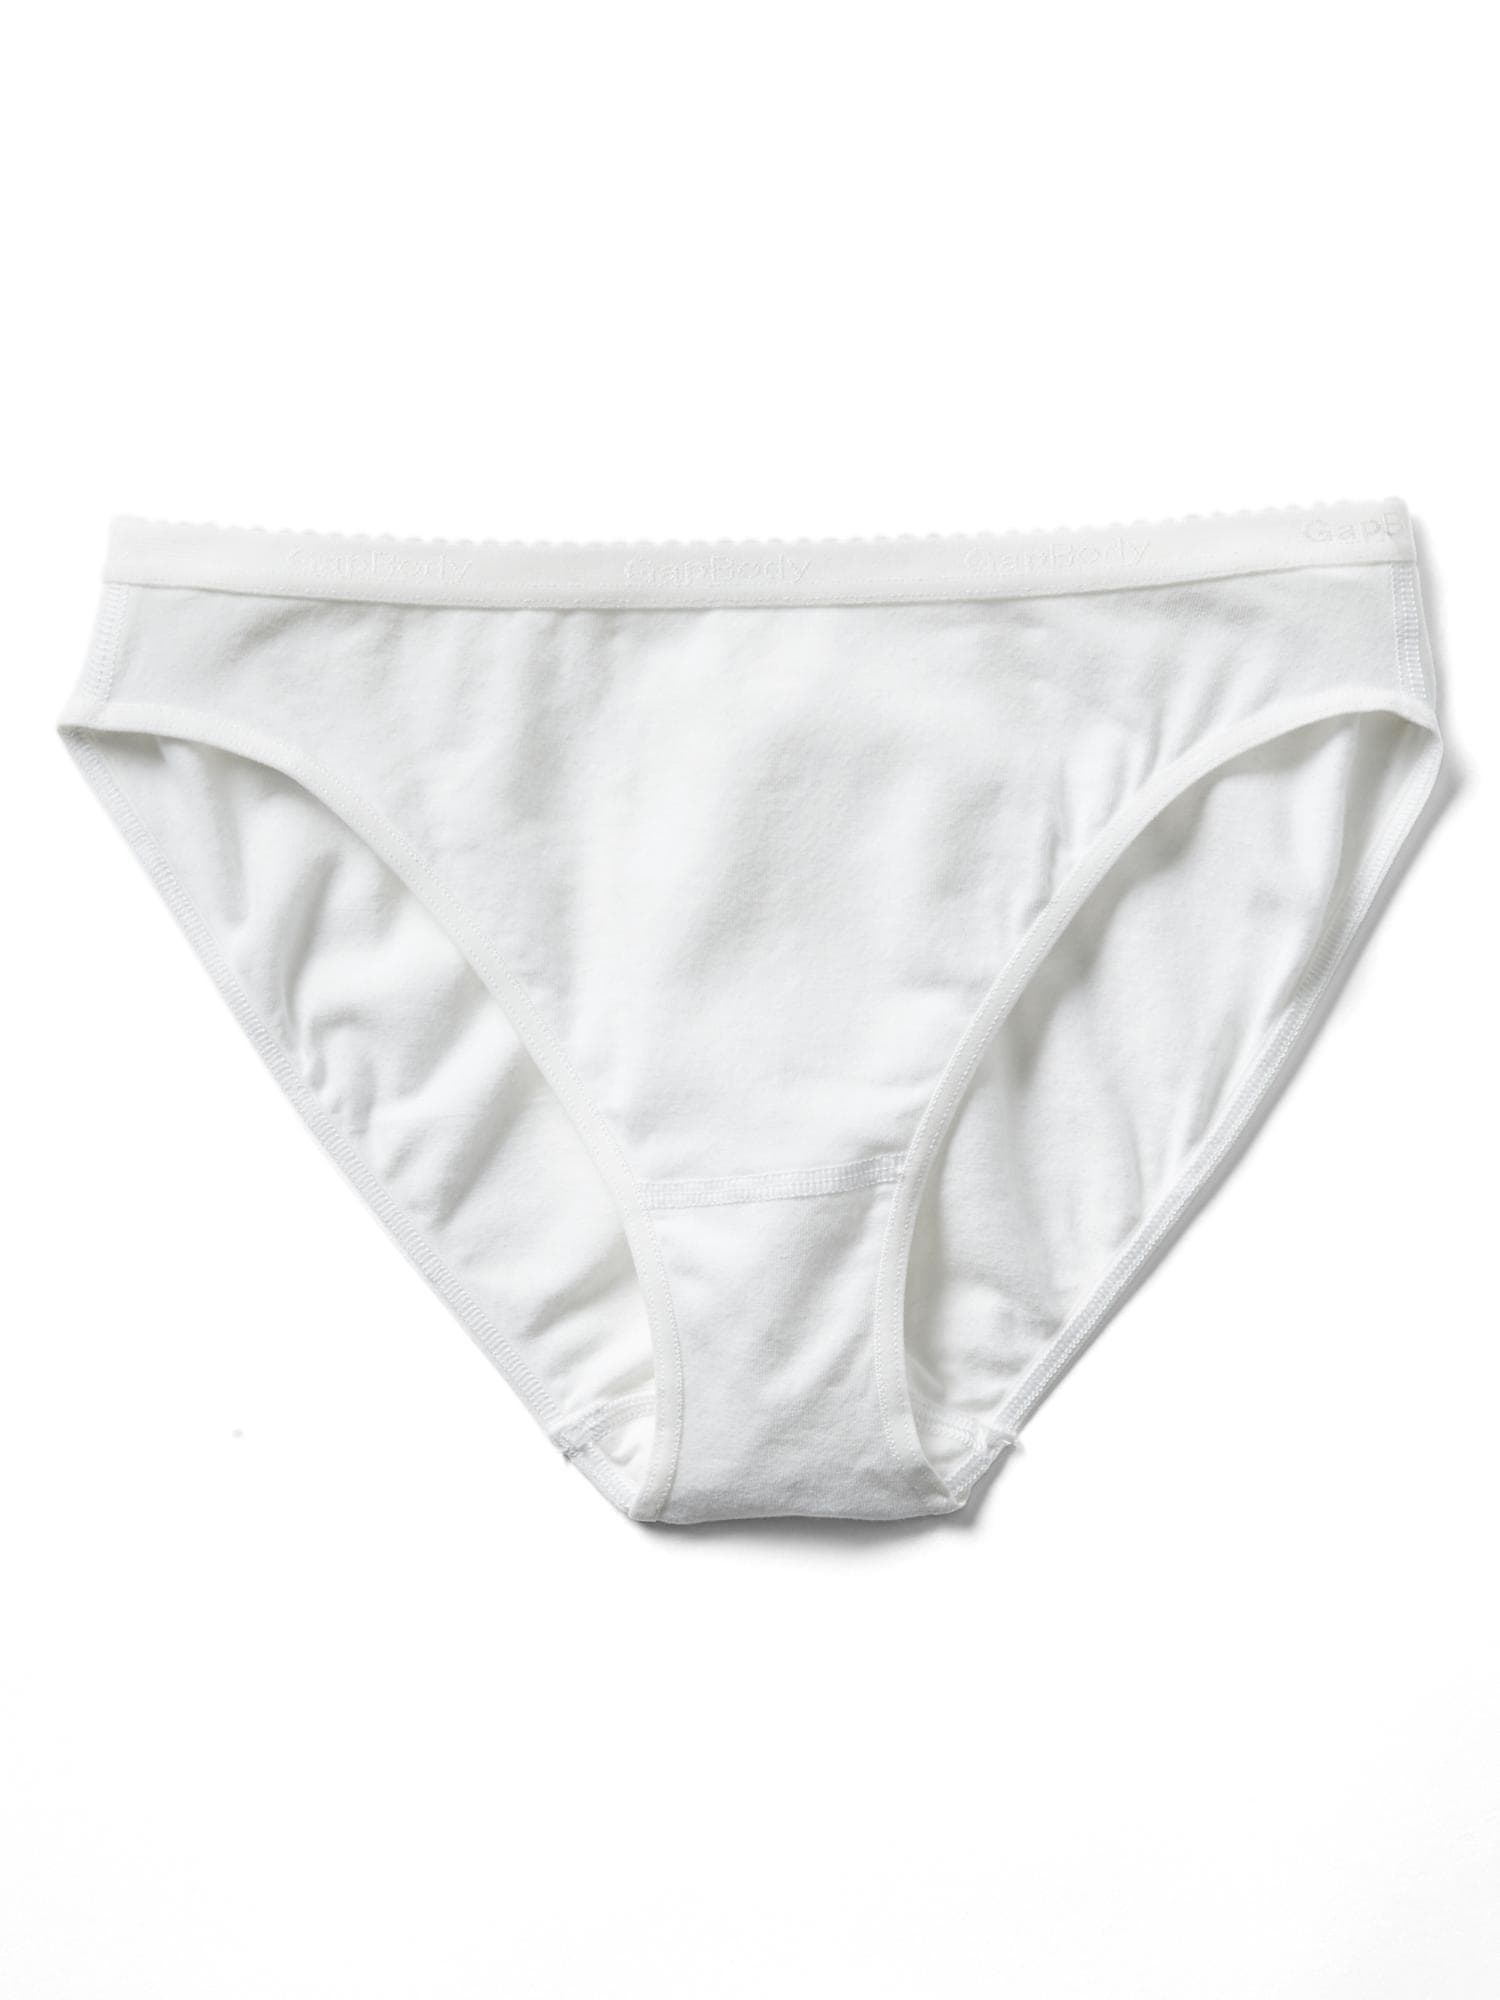 Womens Bikini Briefs 100% Cotton High Leg Ladies Knickers Underwear Sizes  6-28